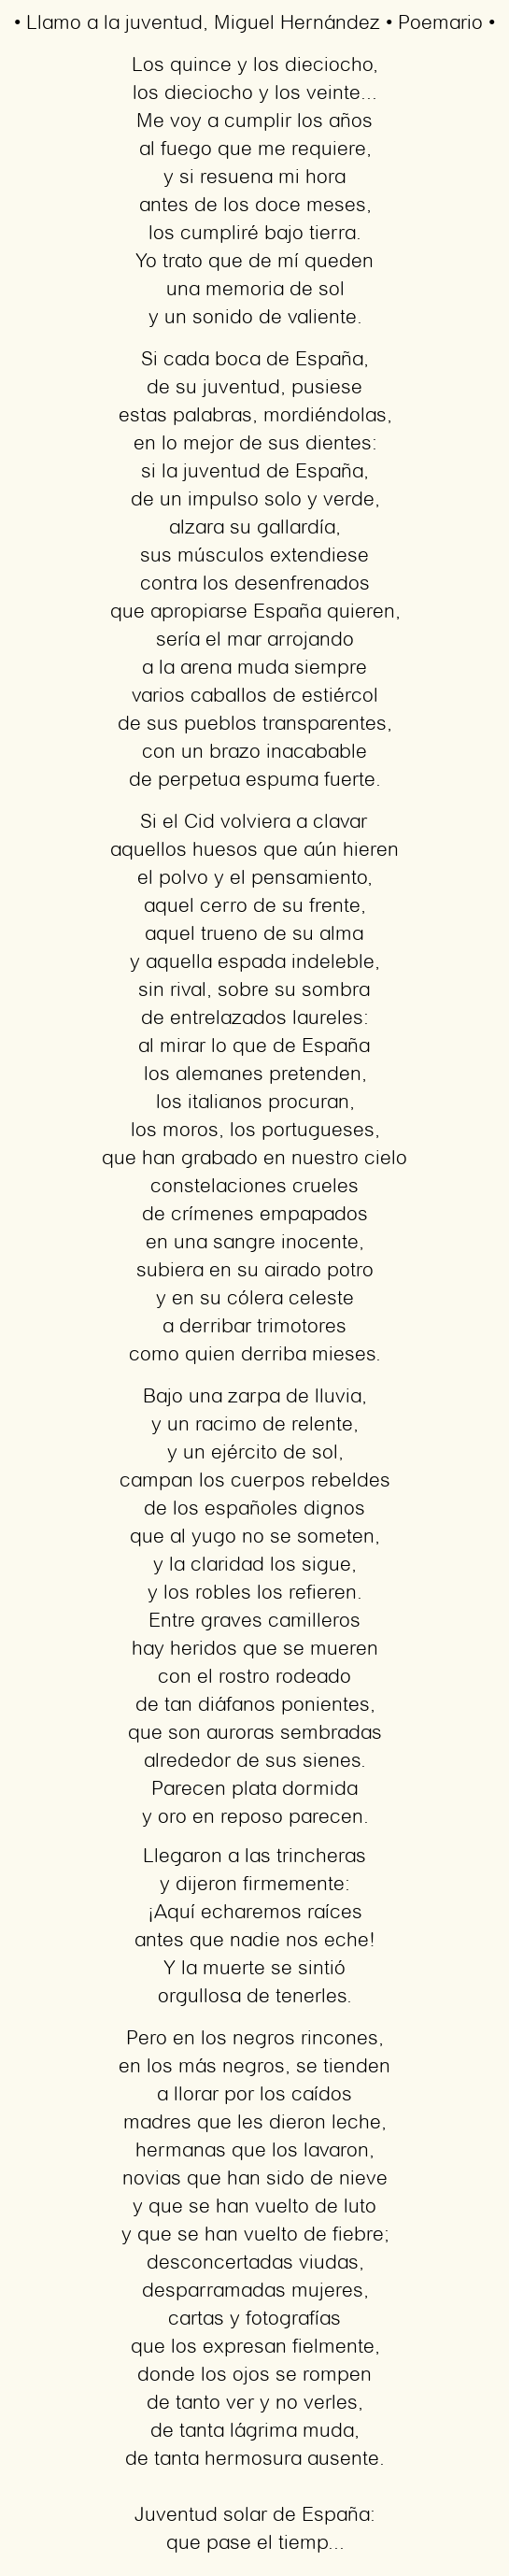 Imagen con el poema Llamo a la juventud, por Miguel Hernández